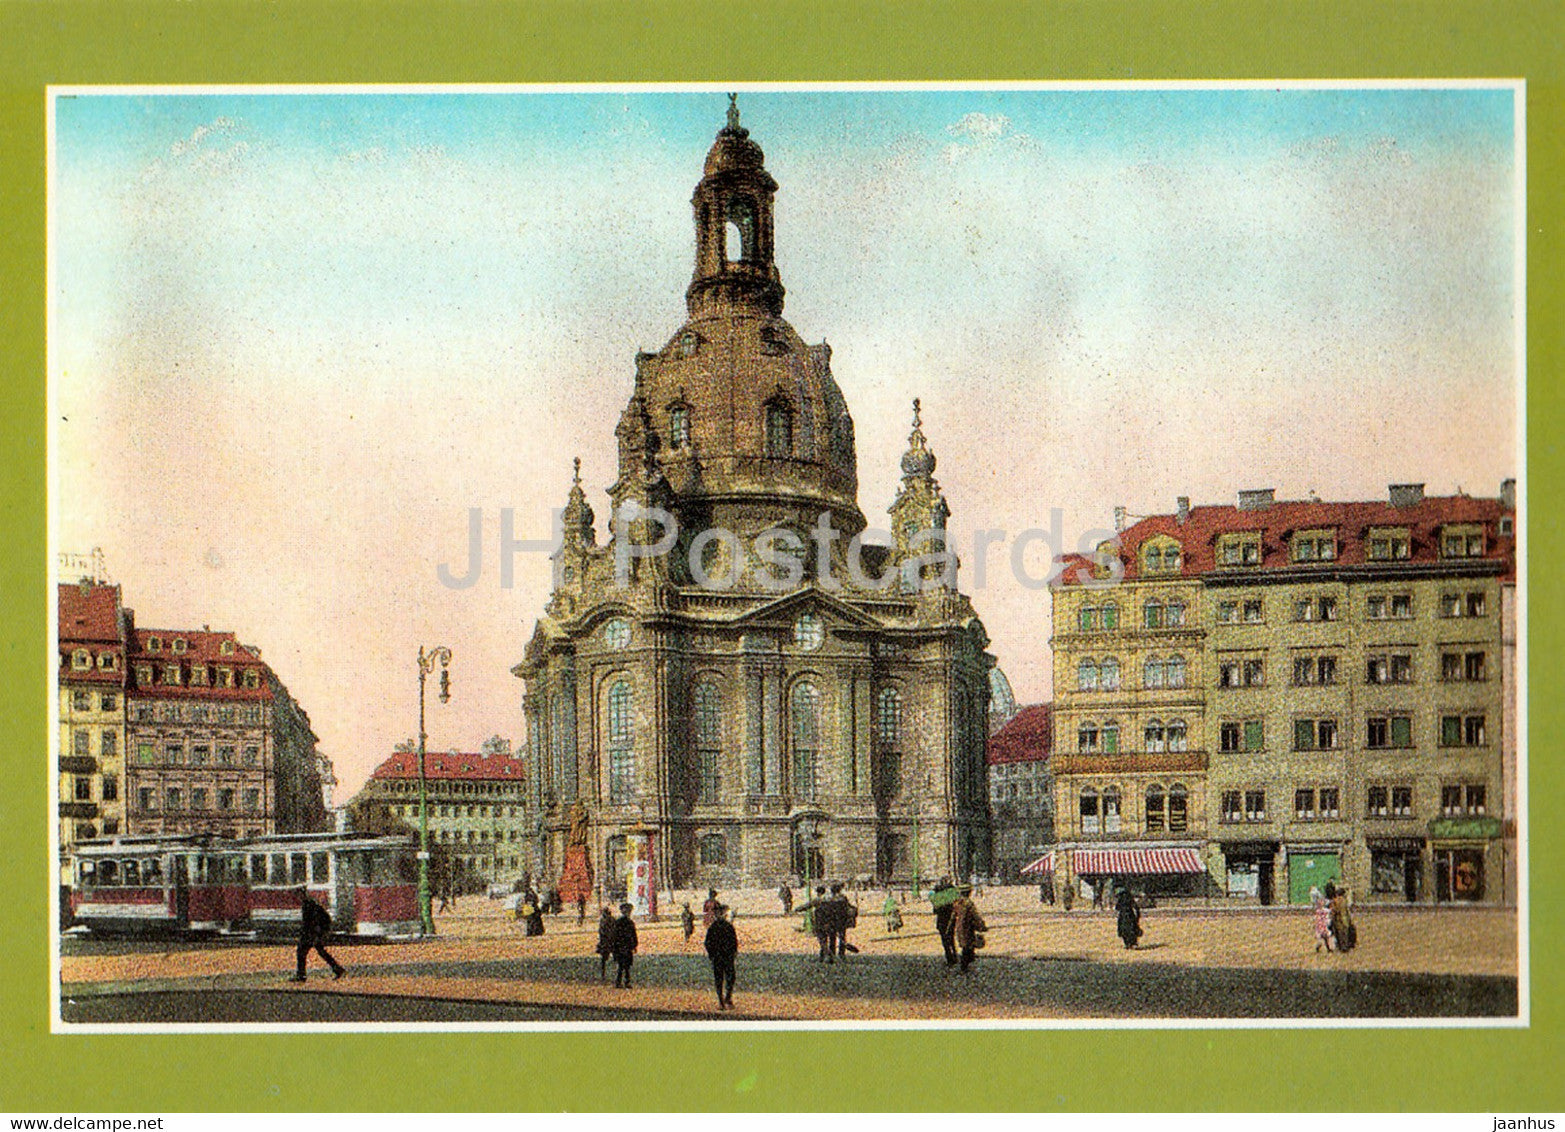 Dresden - Neumarkt mit Frauenkirche um 1910 - tram - Reproduktion - Historische Ansichten - DDR Germany - unused - JH Postcards